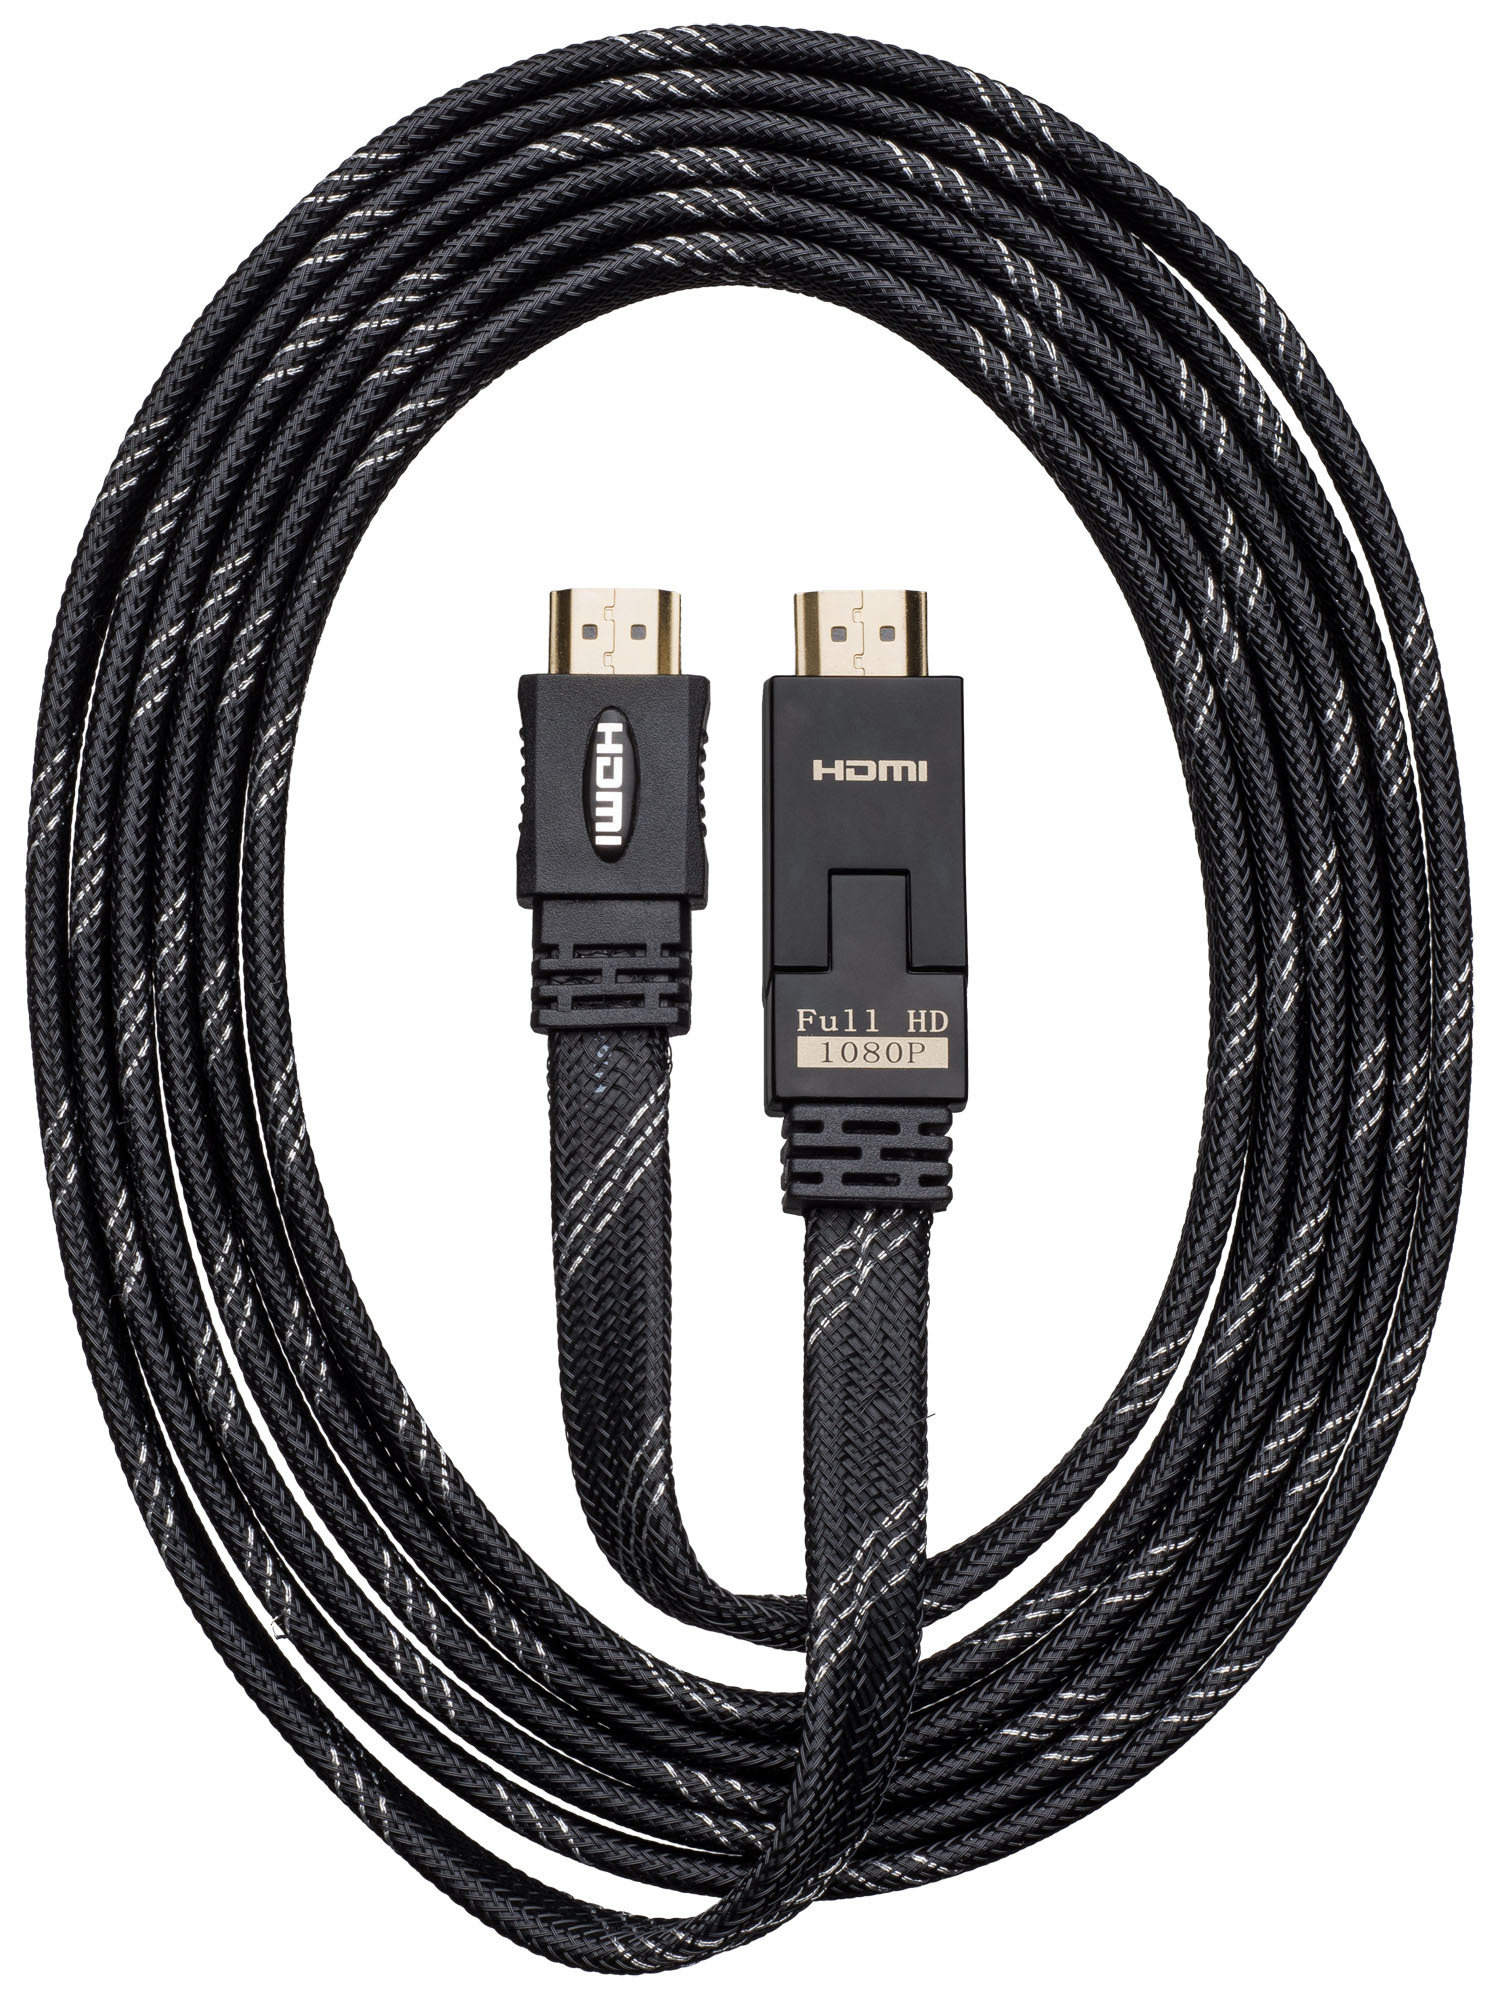 BigBen platte HDMI kabel met kantelbare plug